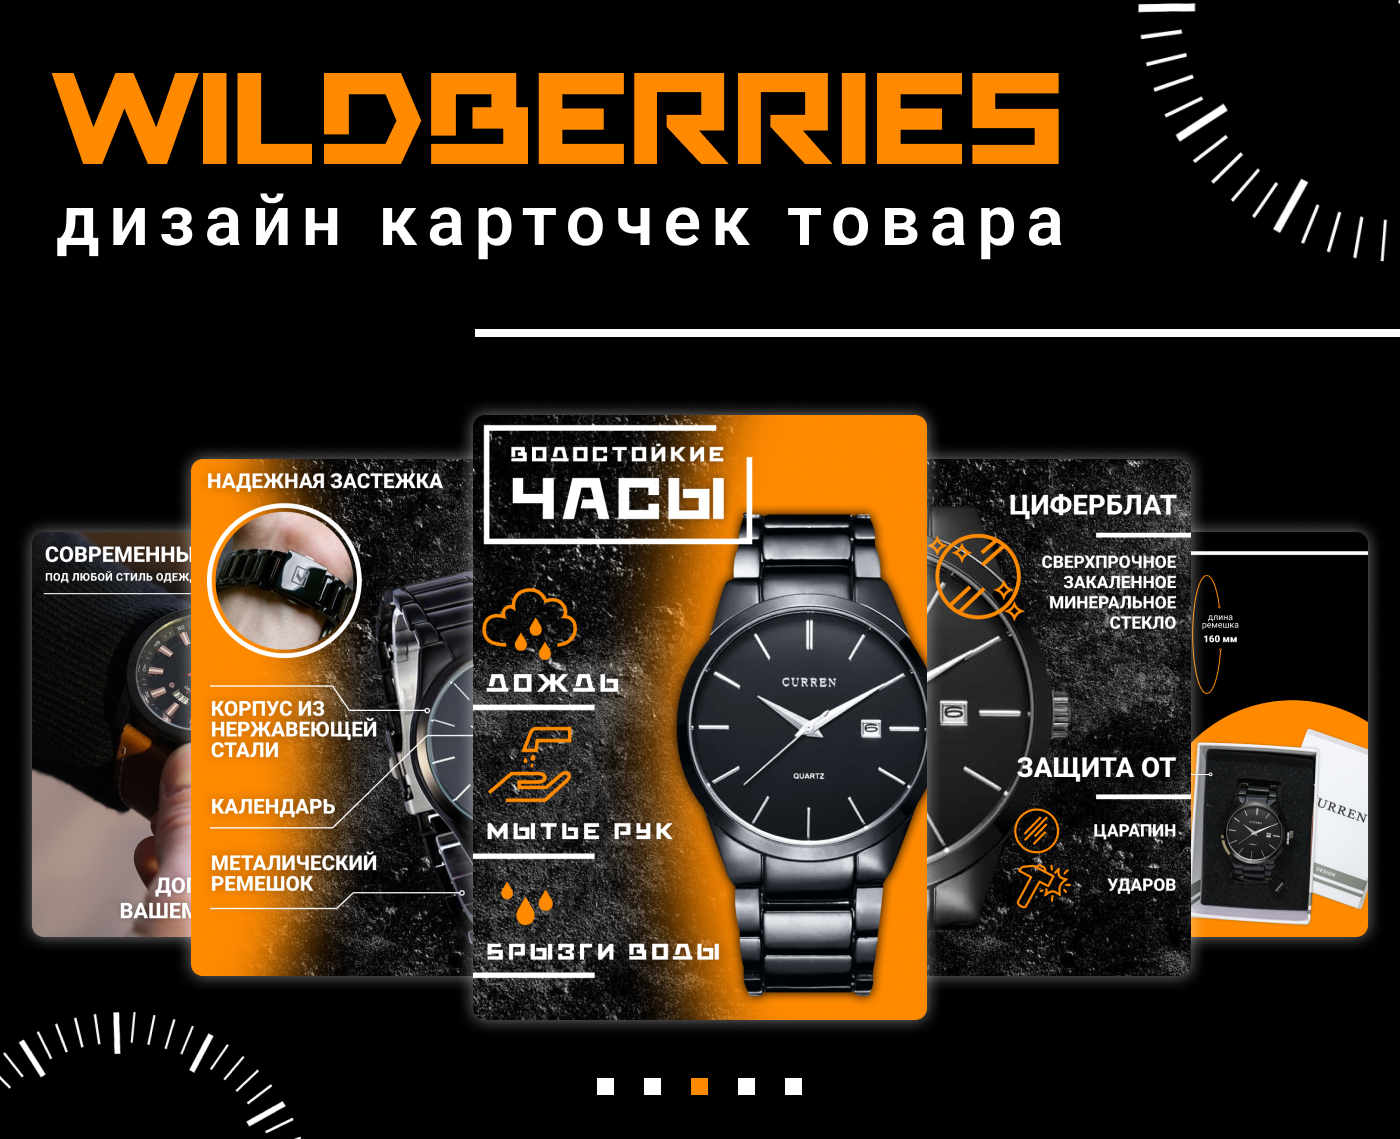 Маркетплейсы часов. Инфографика Wildberries для карточек. Дизайн инфографики для Wildberries. Дизайн инфографика для маркетплейсов. Дизайн карточек товара для Wildberries.